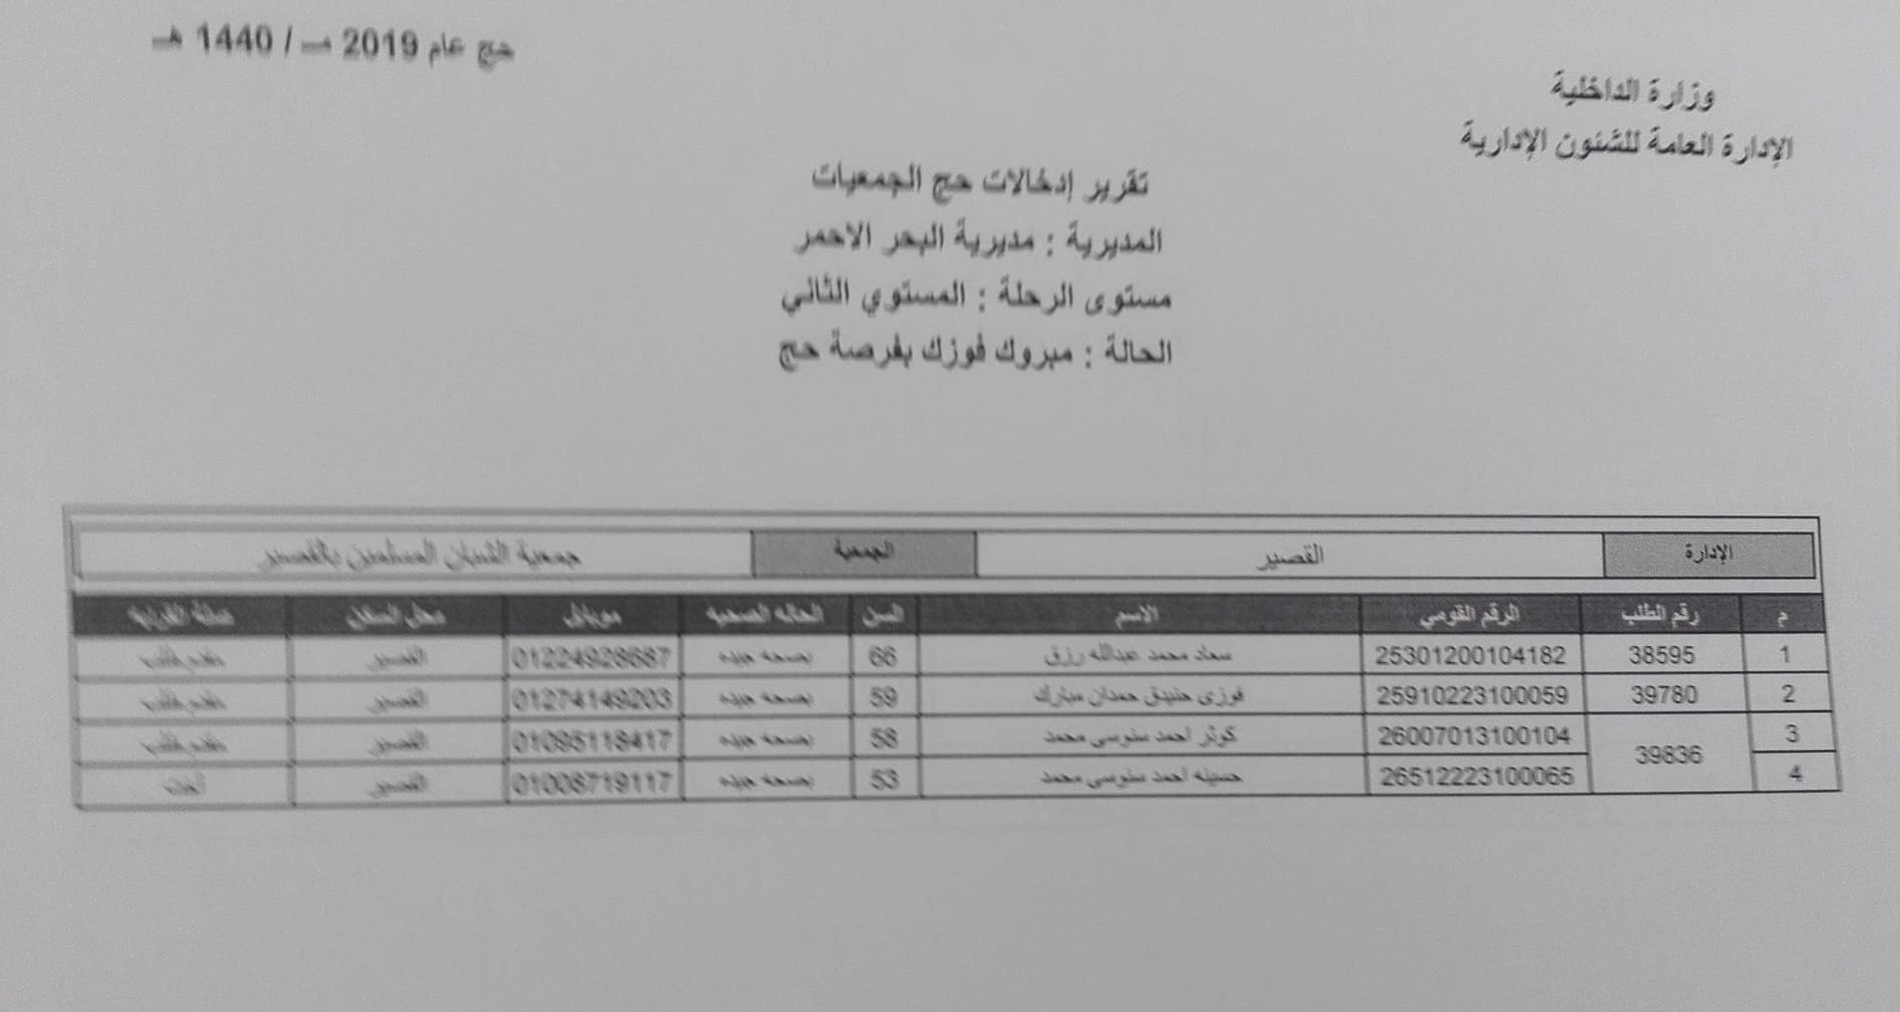  أسماء الفائزين بقرعة حج الجمعيات فى محافظة البحر الأحمر (4)